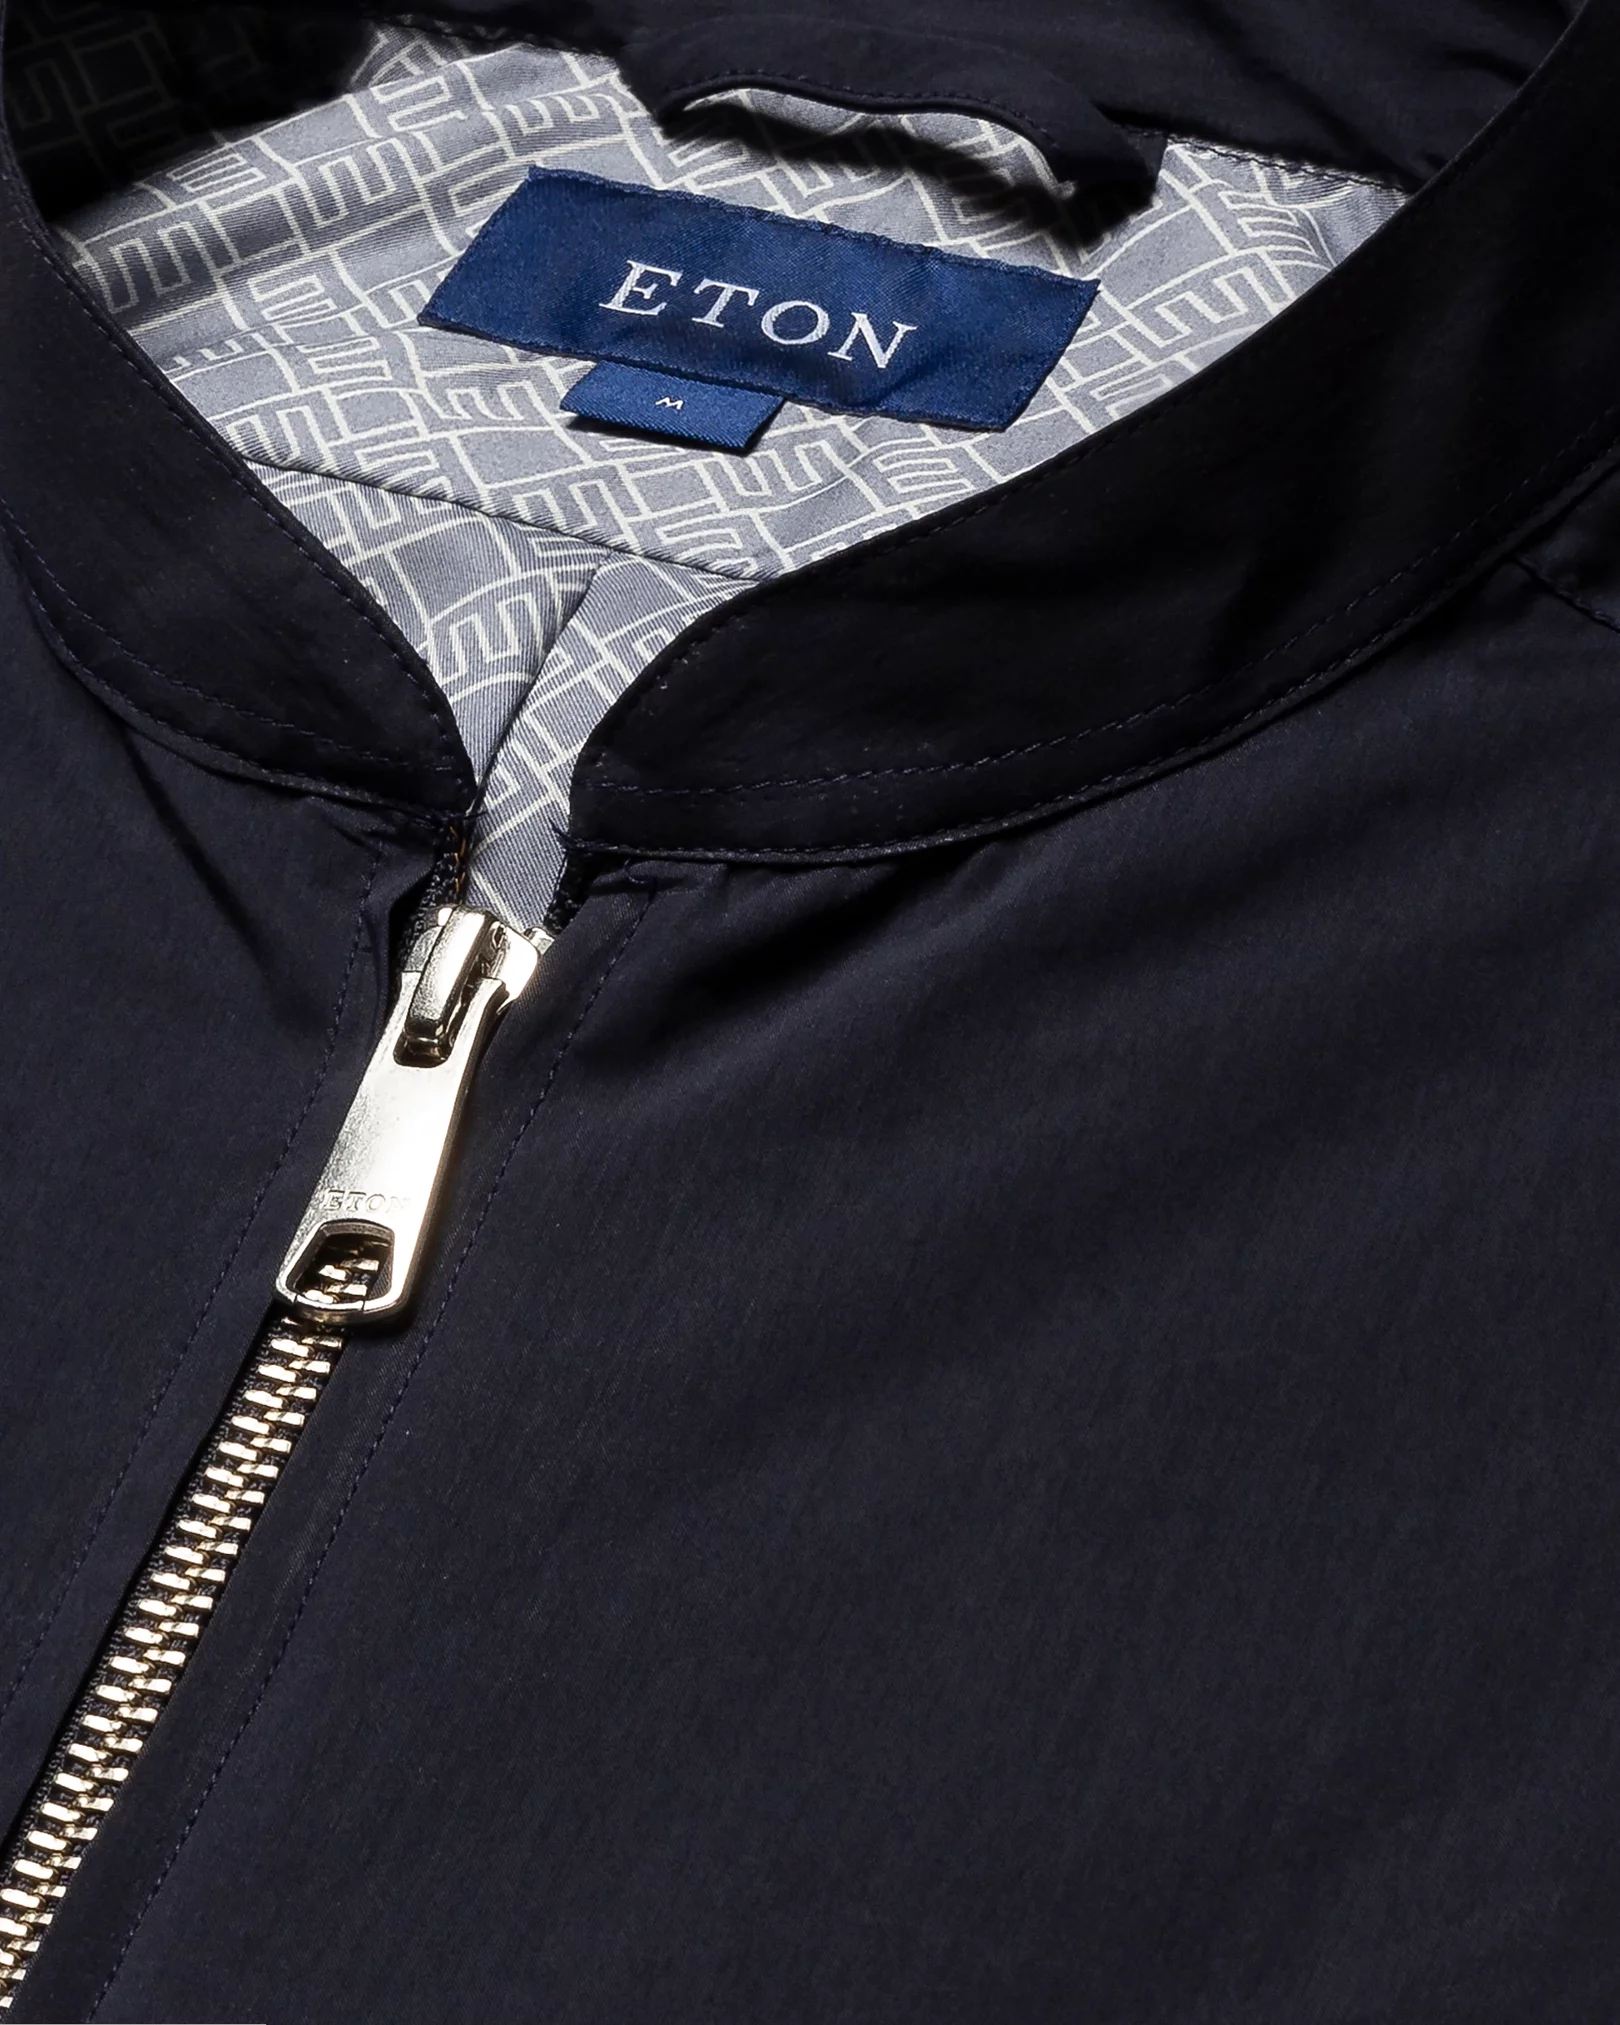 Eton - navy blue cotton and nylon